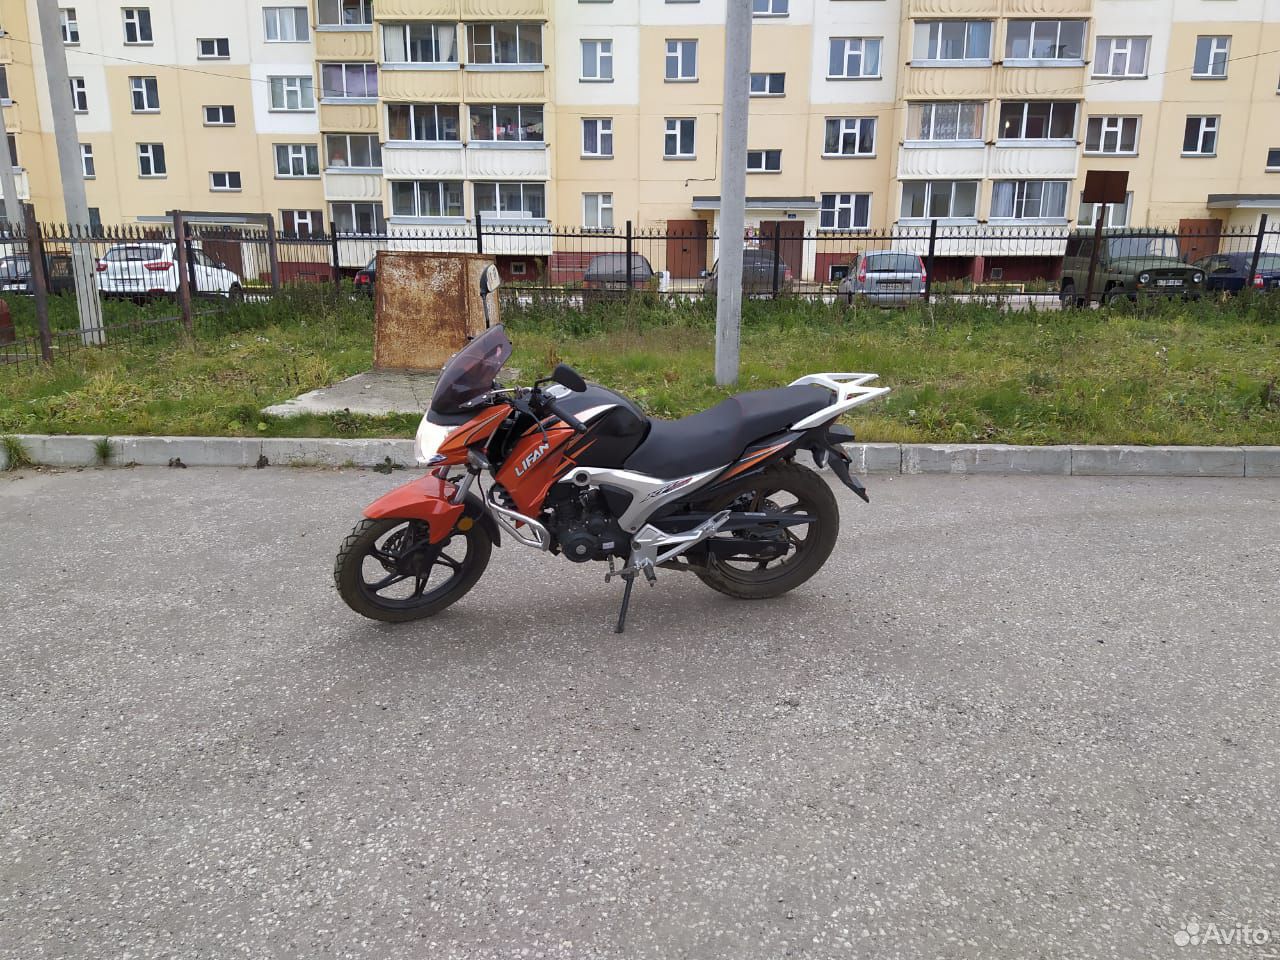  Мотоцикл lifan kp-150  89097165288 купить 3